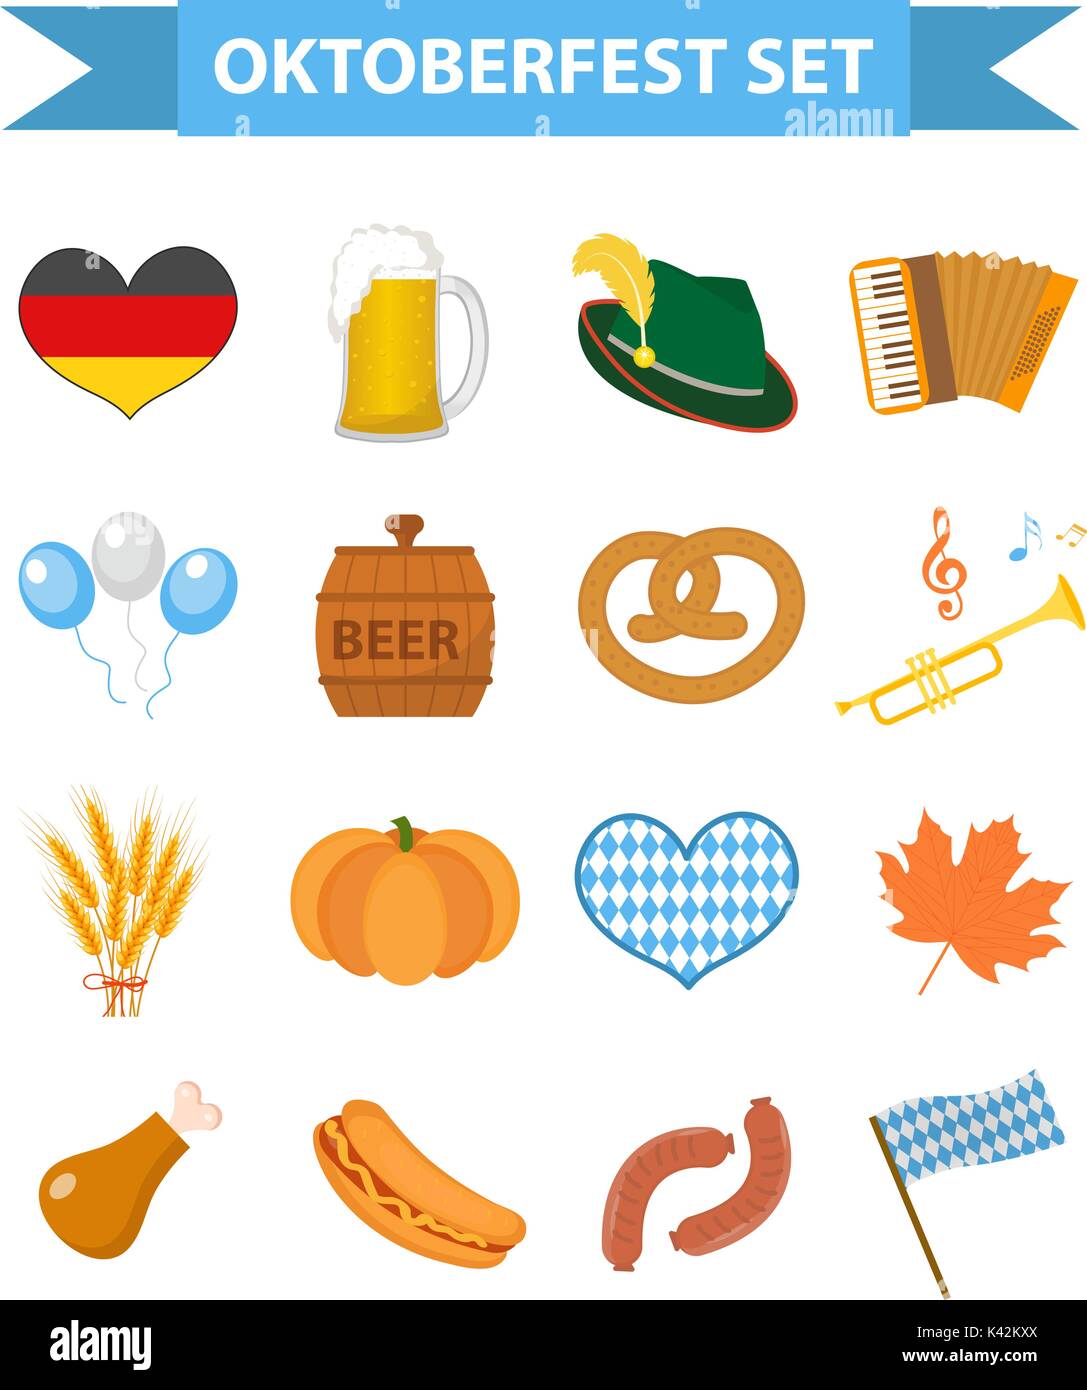 Oktoberfest Icon Set, flach oder Cartoon Stil. Oktober fest in Deutschland Sammlung von traditionellen Symbole, Designelemente mit Bier, Essen, cap. Auf weissem Hintergrund. Vector Illustration. Stock Vektor